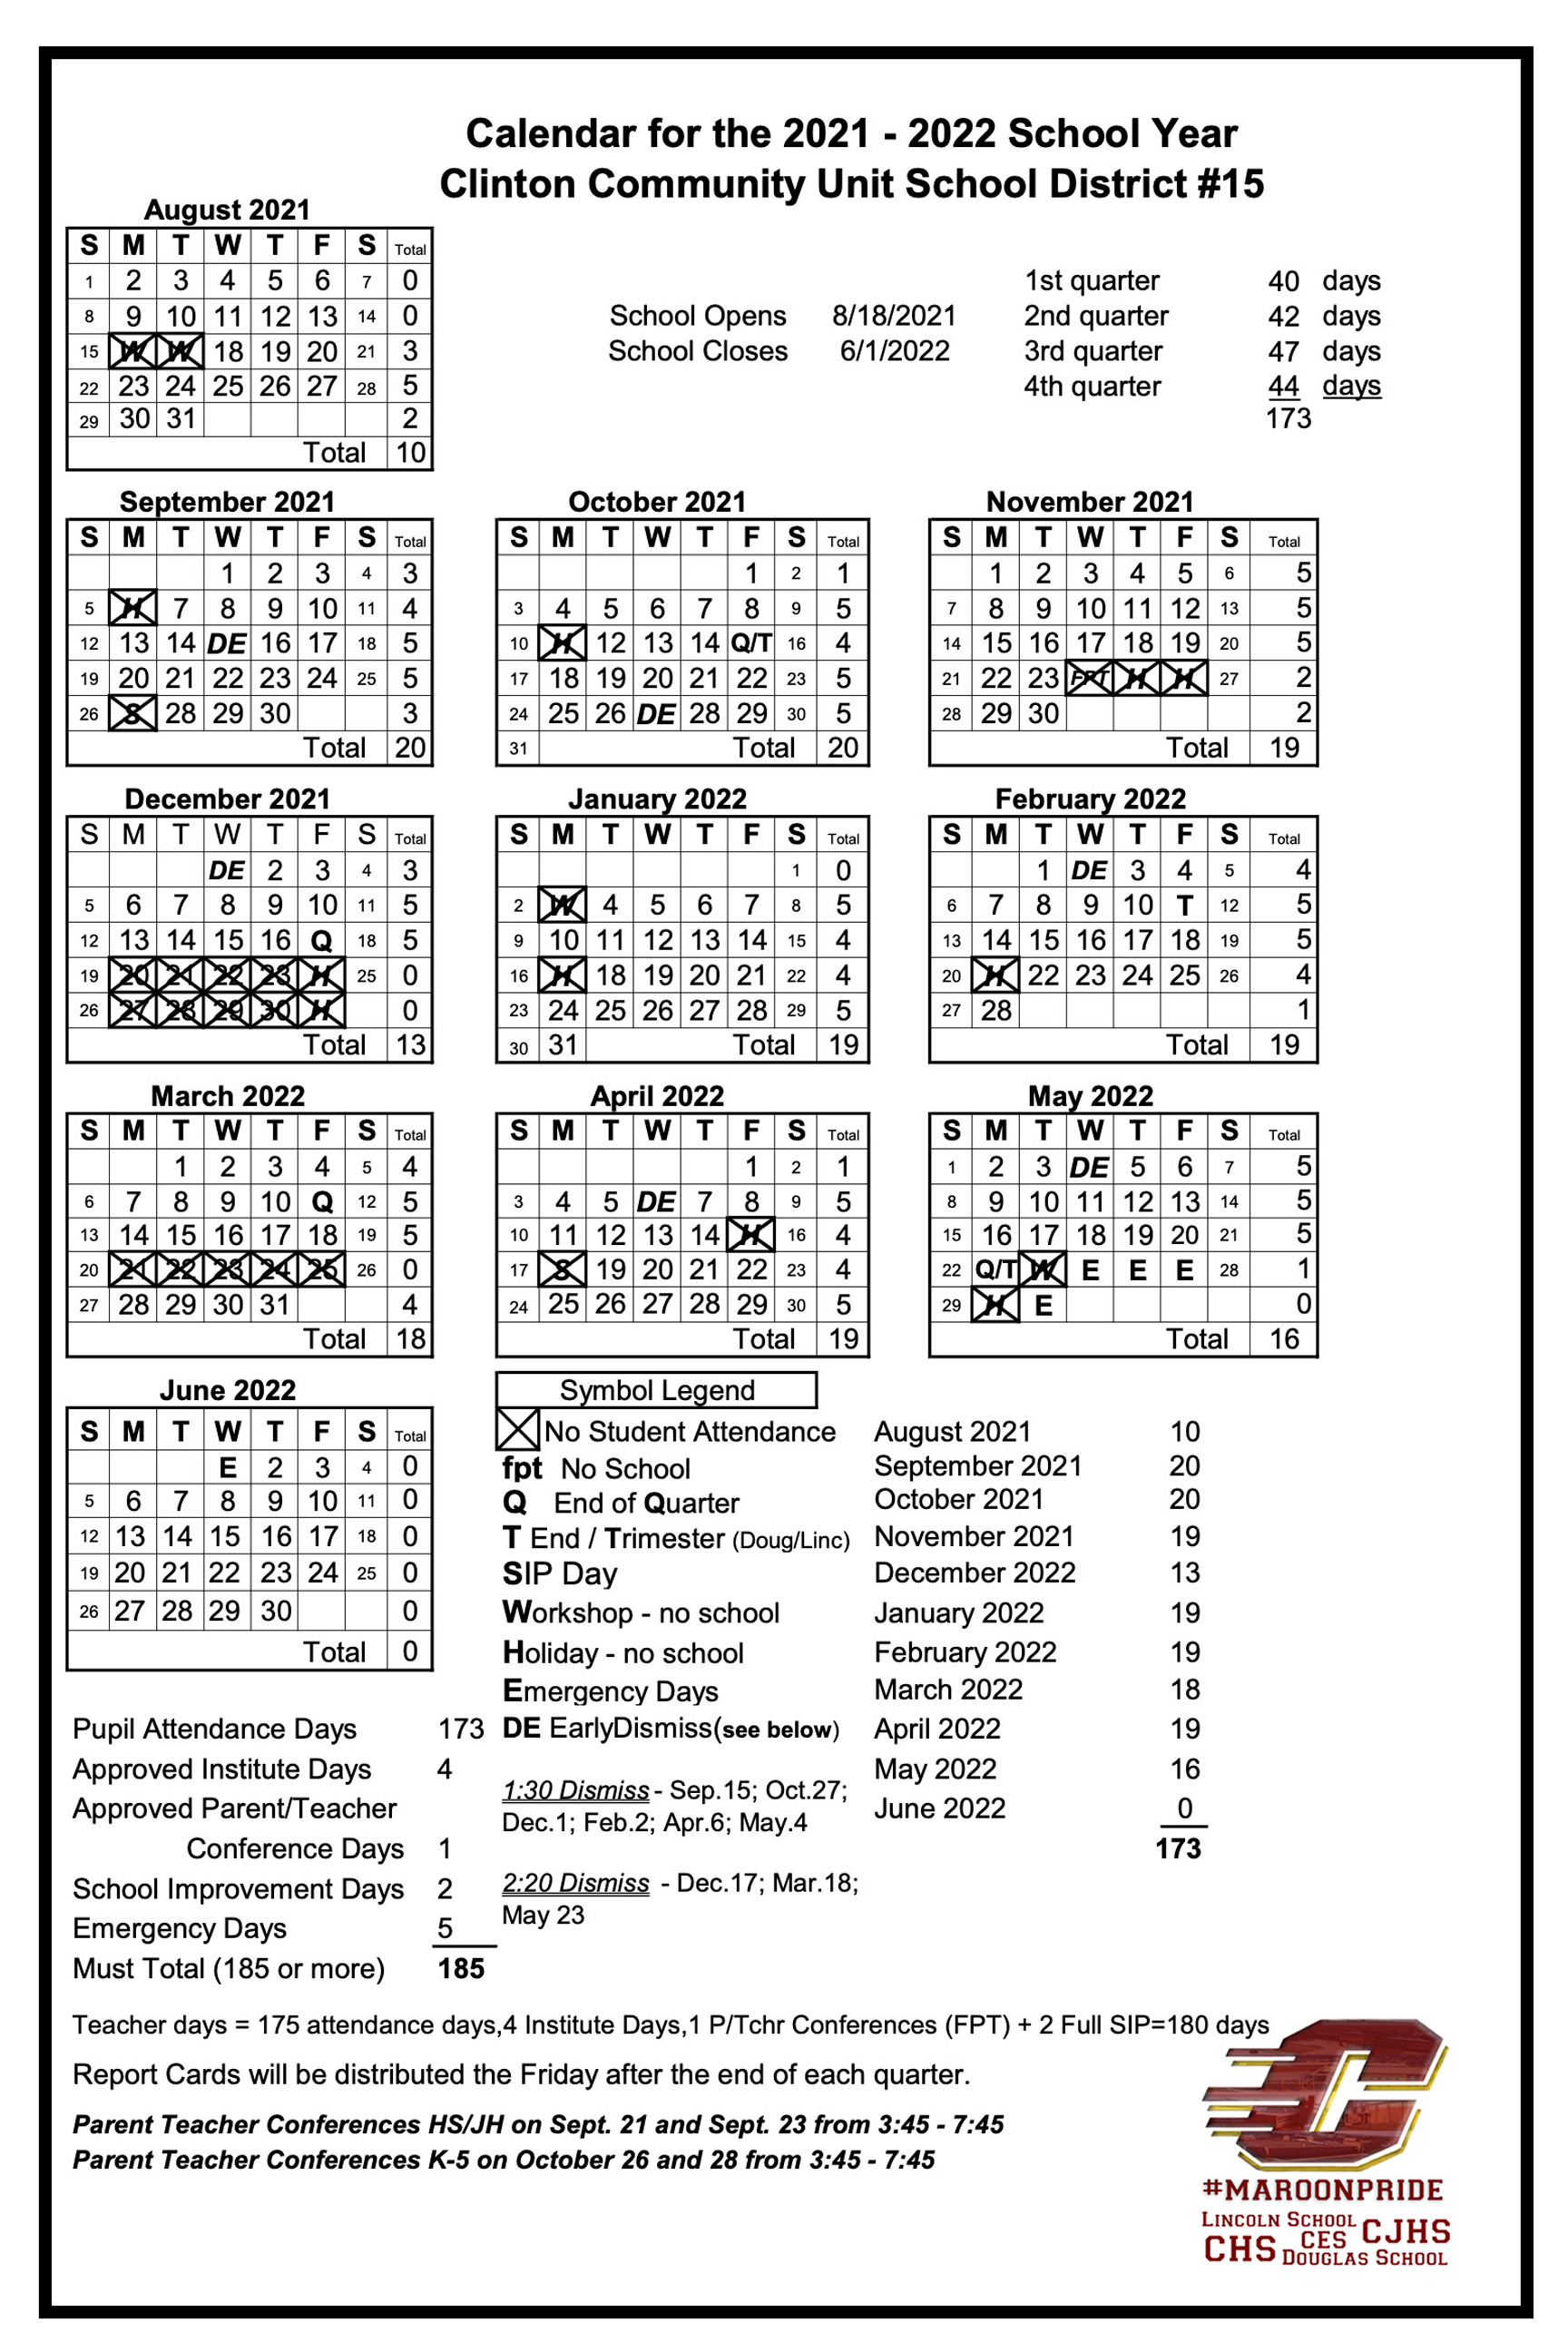 School Calendar Clinton CUSD 15